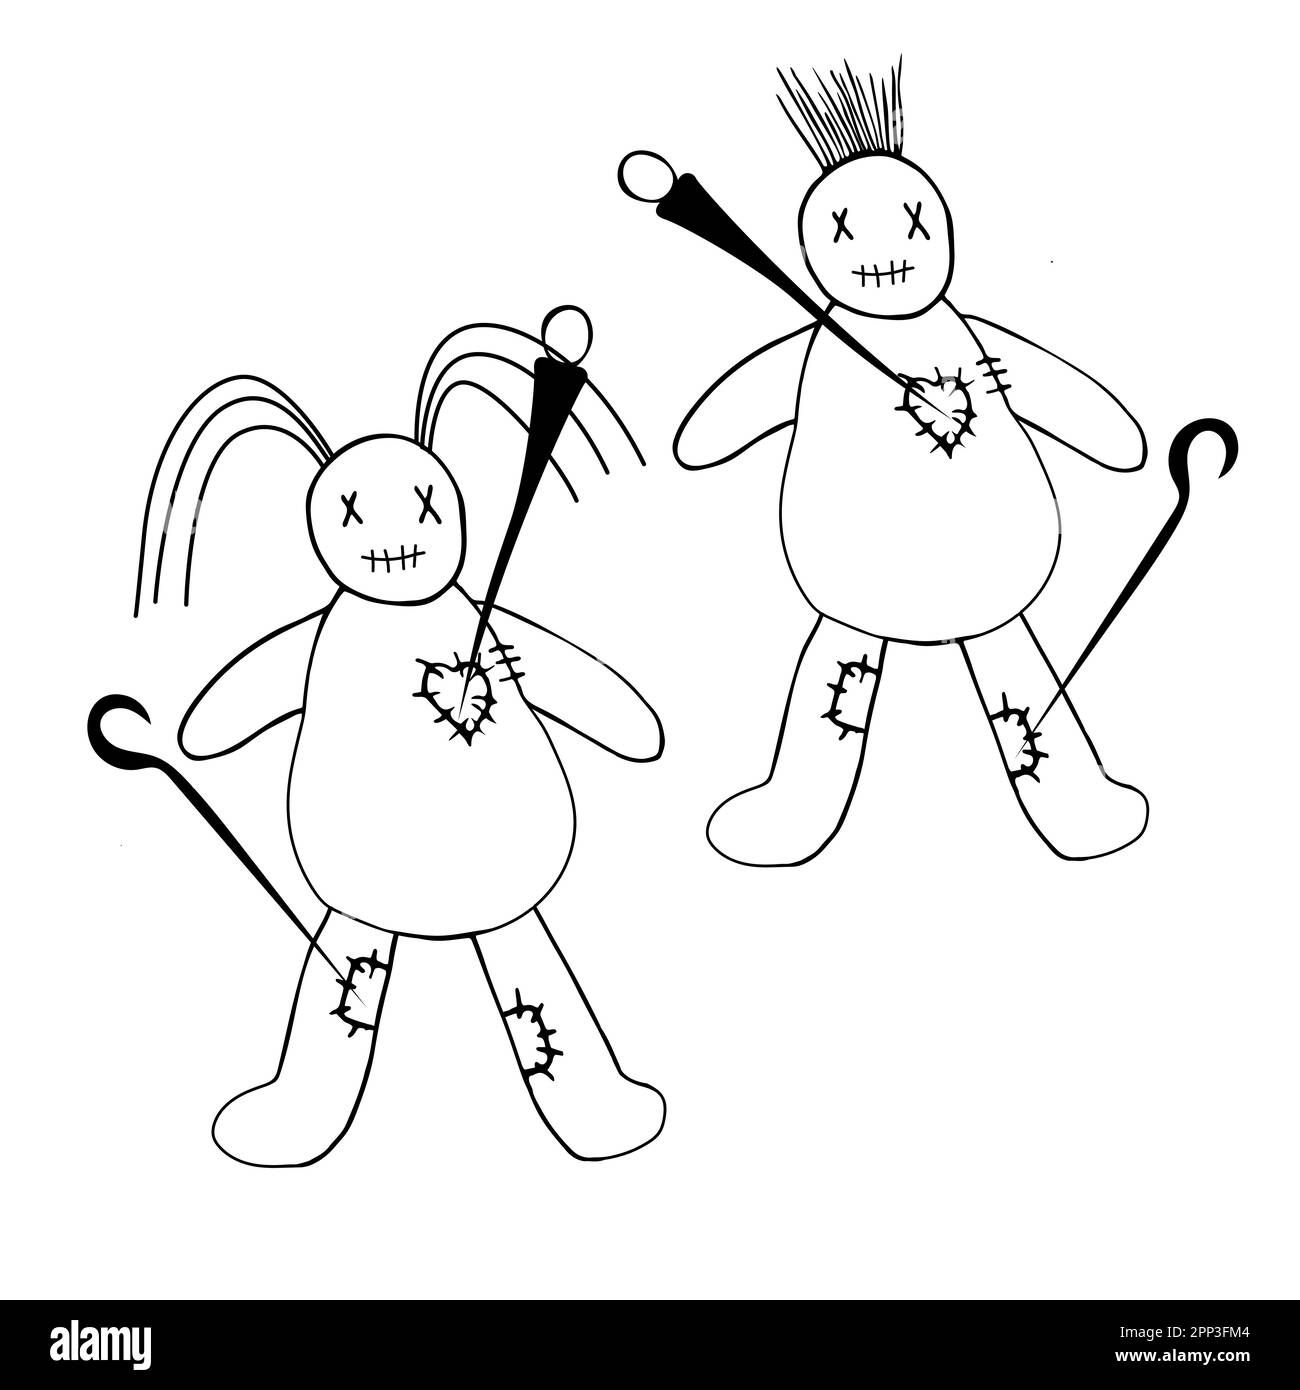 Illustrazione vettoriale di due bambole di voodoo disegnate a mano che sono state forate con spilli. Una bambola di mans e di una donna voodoo. Illustrazione Vettoriale